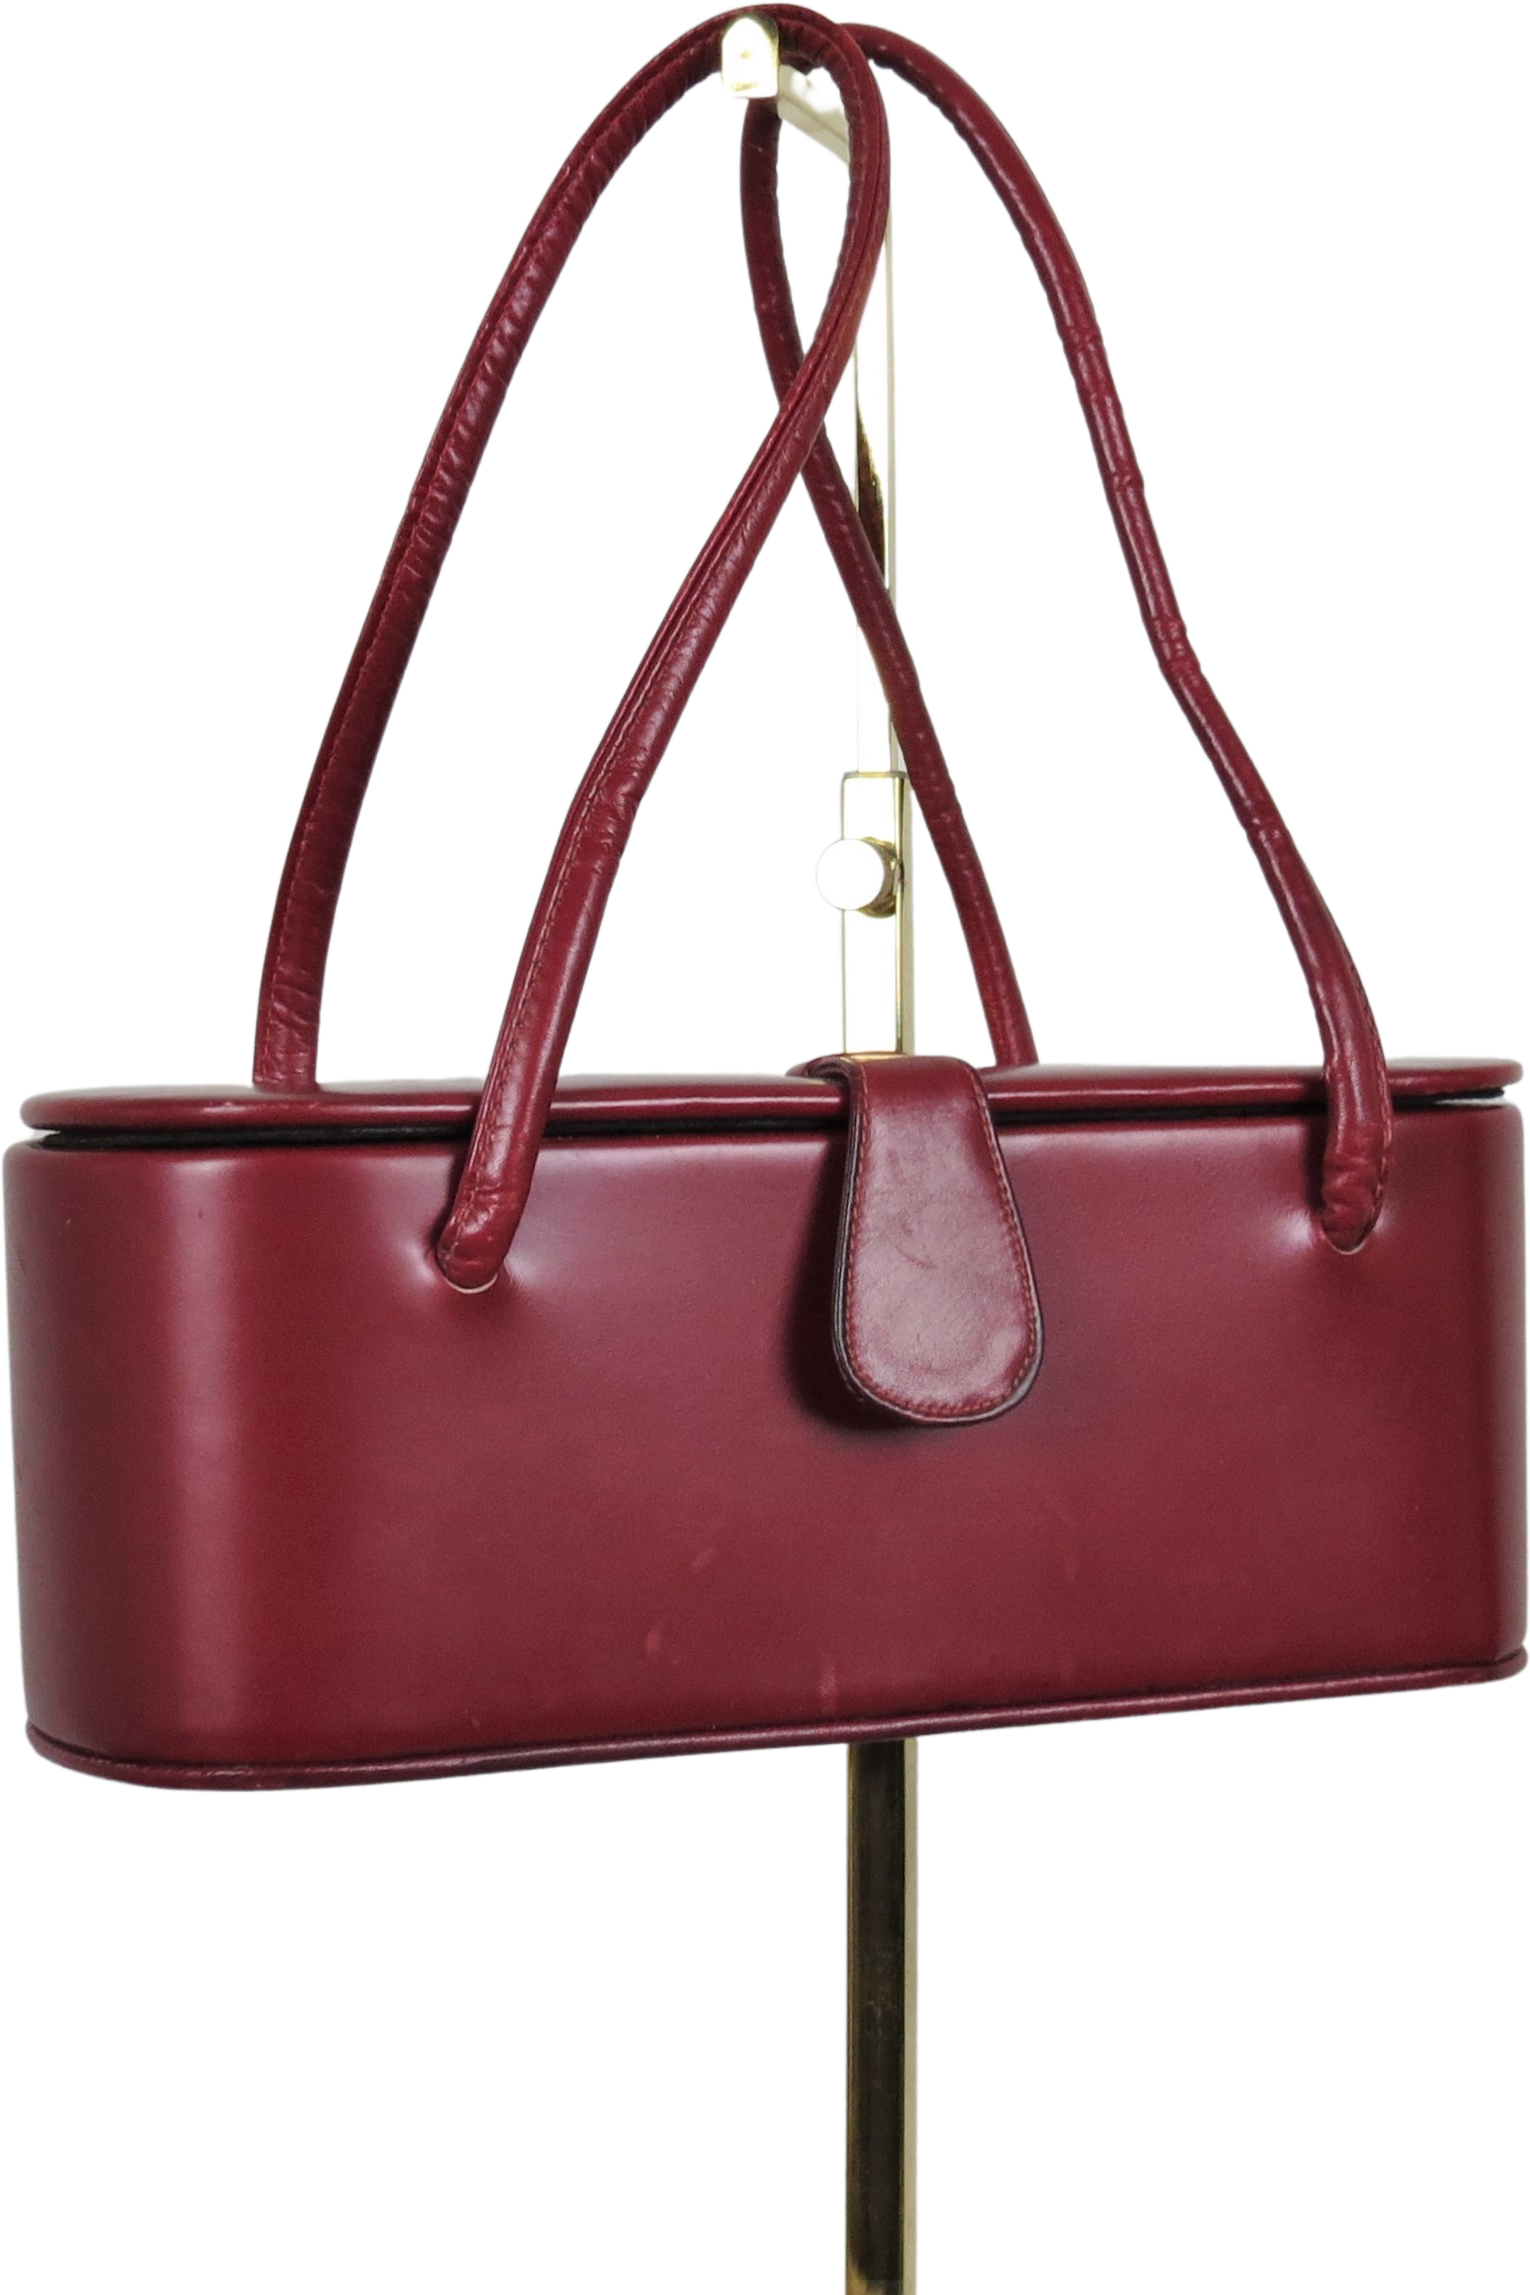 Vintage 1940s Mayer New York Top Handle Bag Purse Handbag 